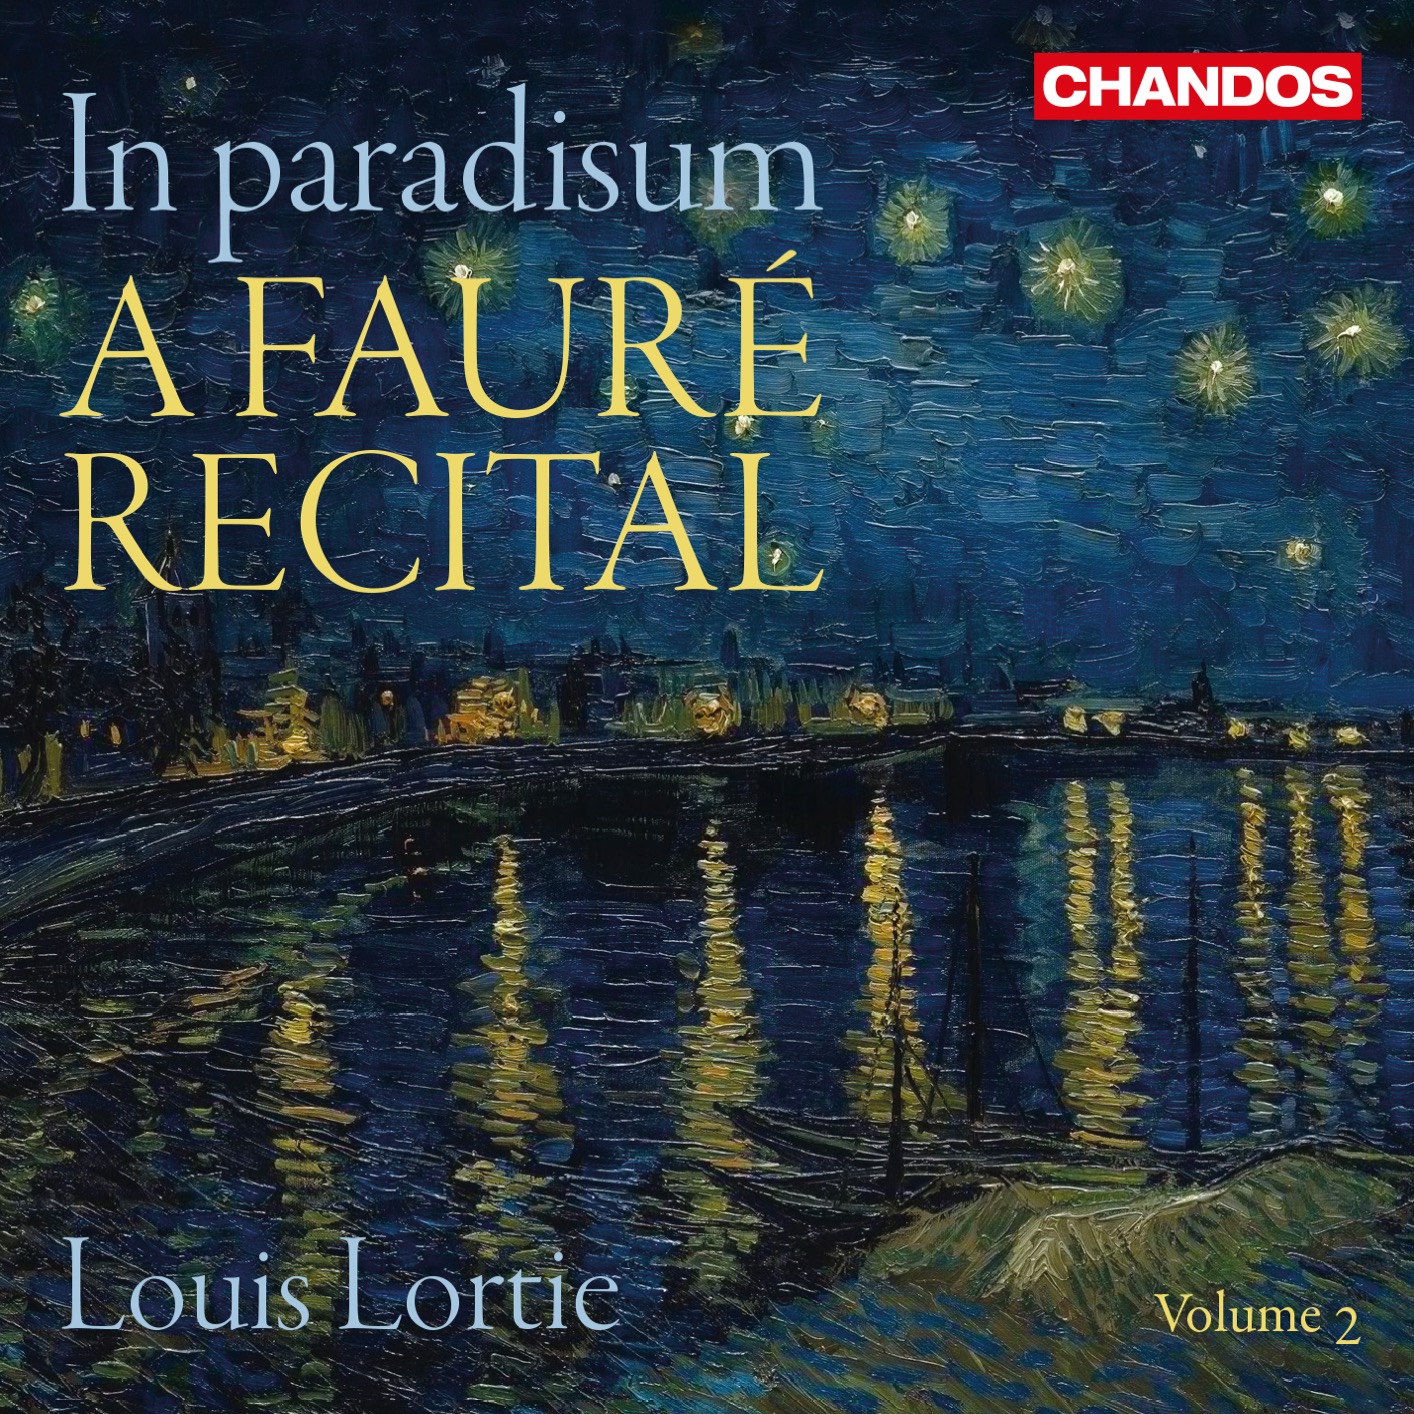 Louis Lortie - In paradisum: A Faure Recital, Vol. 2 (2020) [FLAC 24bit/96kHz]